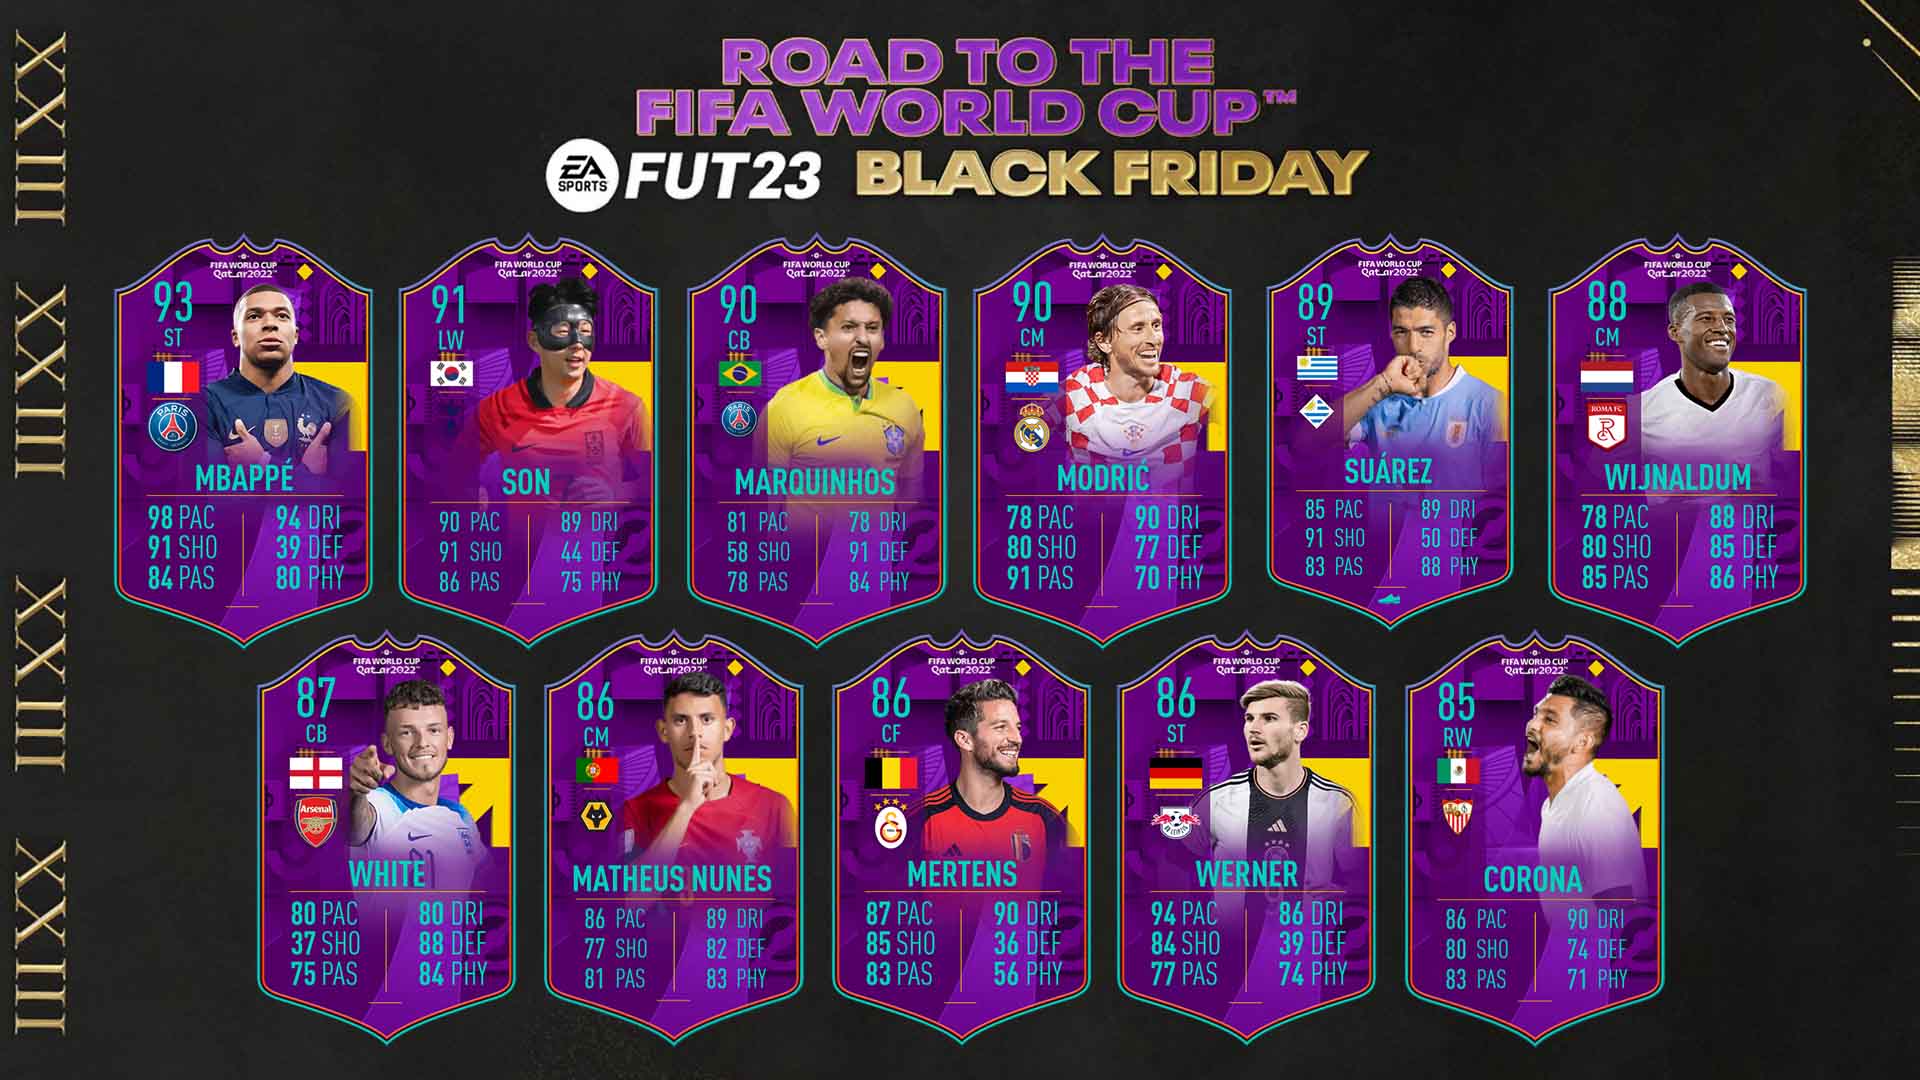 Bilder zu FIFA 23: Road to the World Cup Tracker - Alle Spieler und ihre Upgrades im Überblick